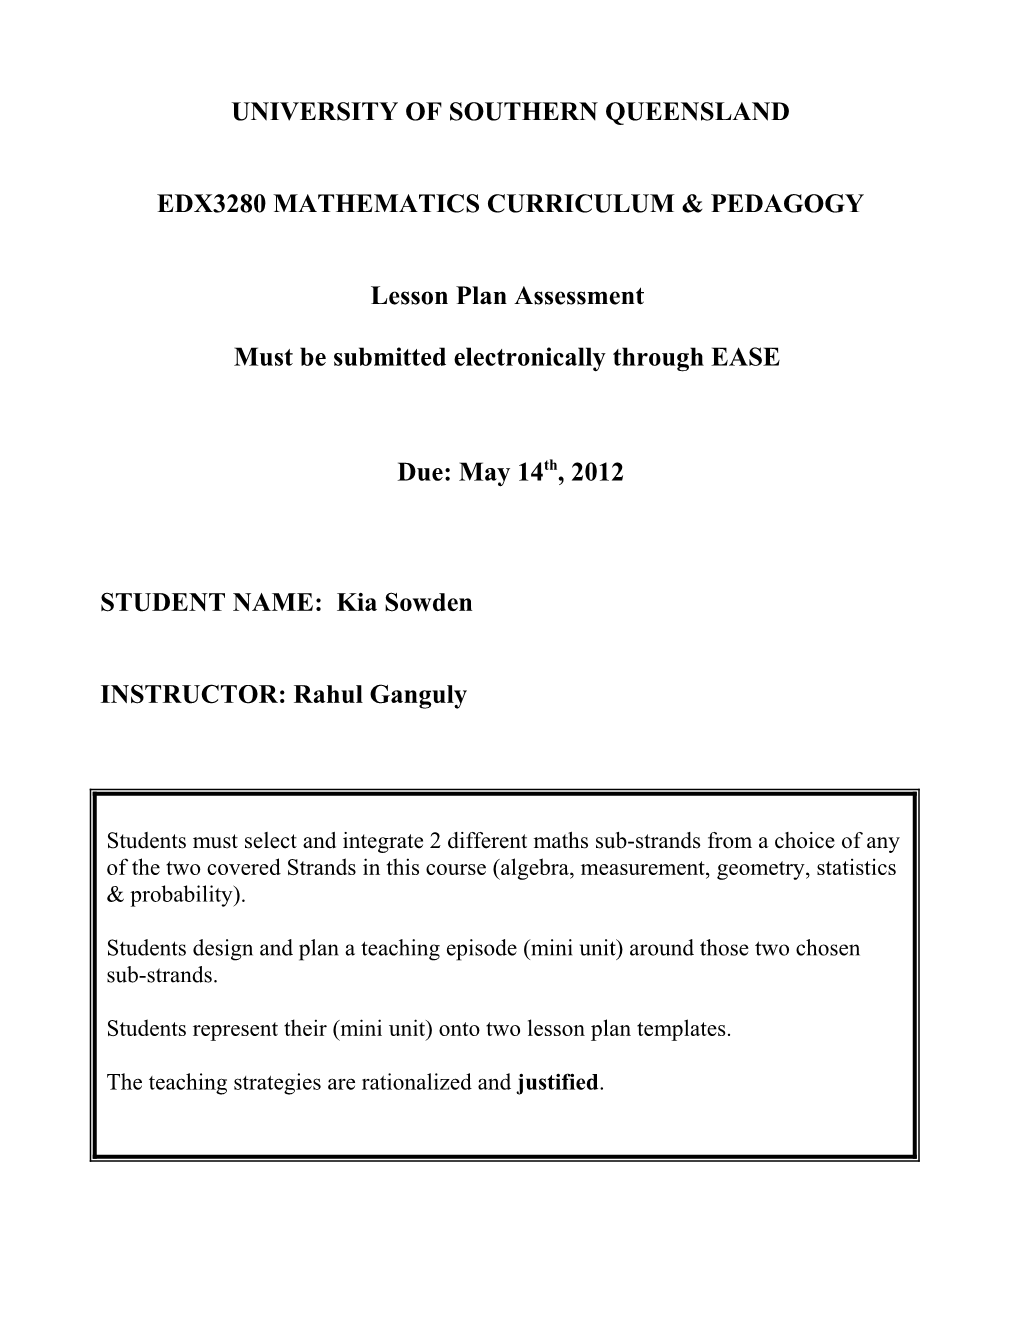 EDP222 Pedagogy and Curriculum 2